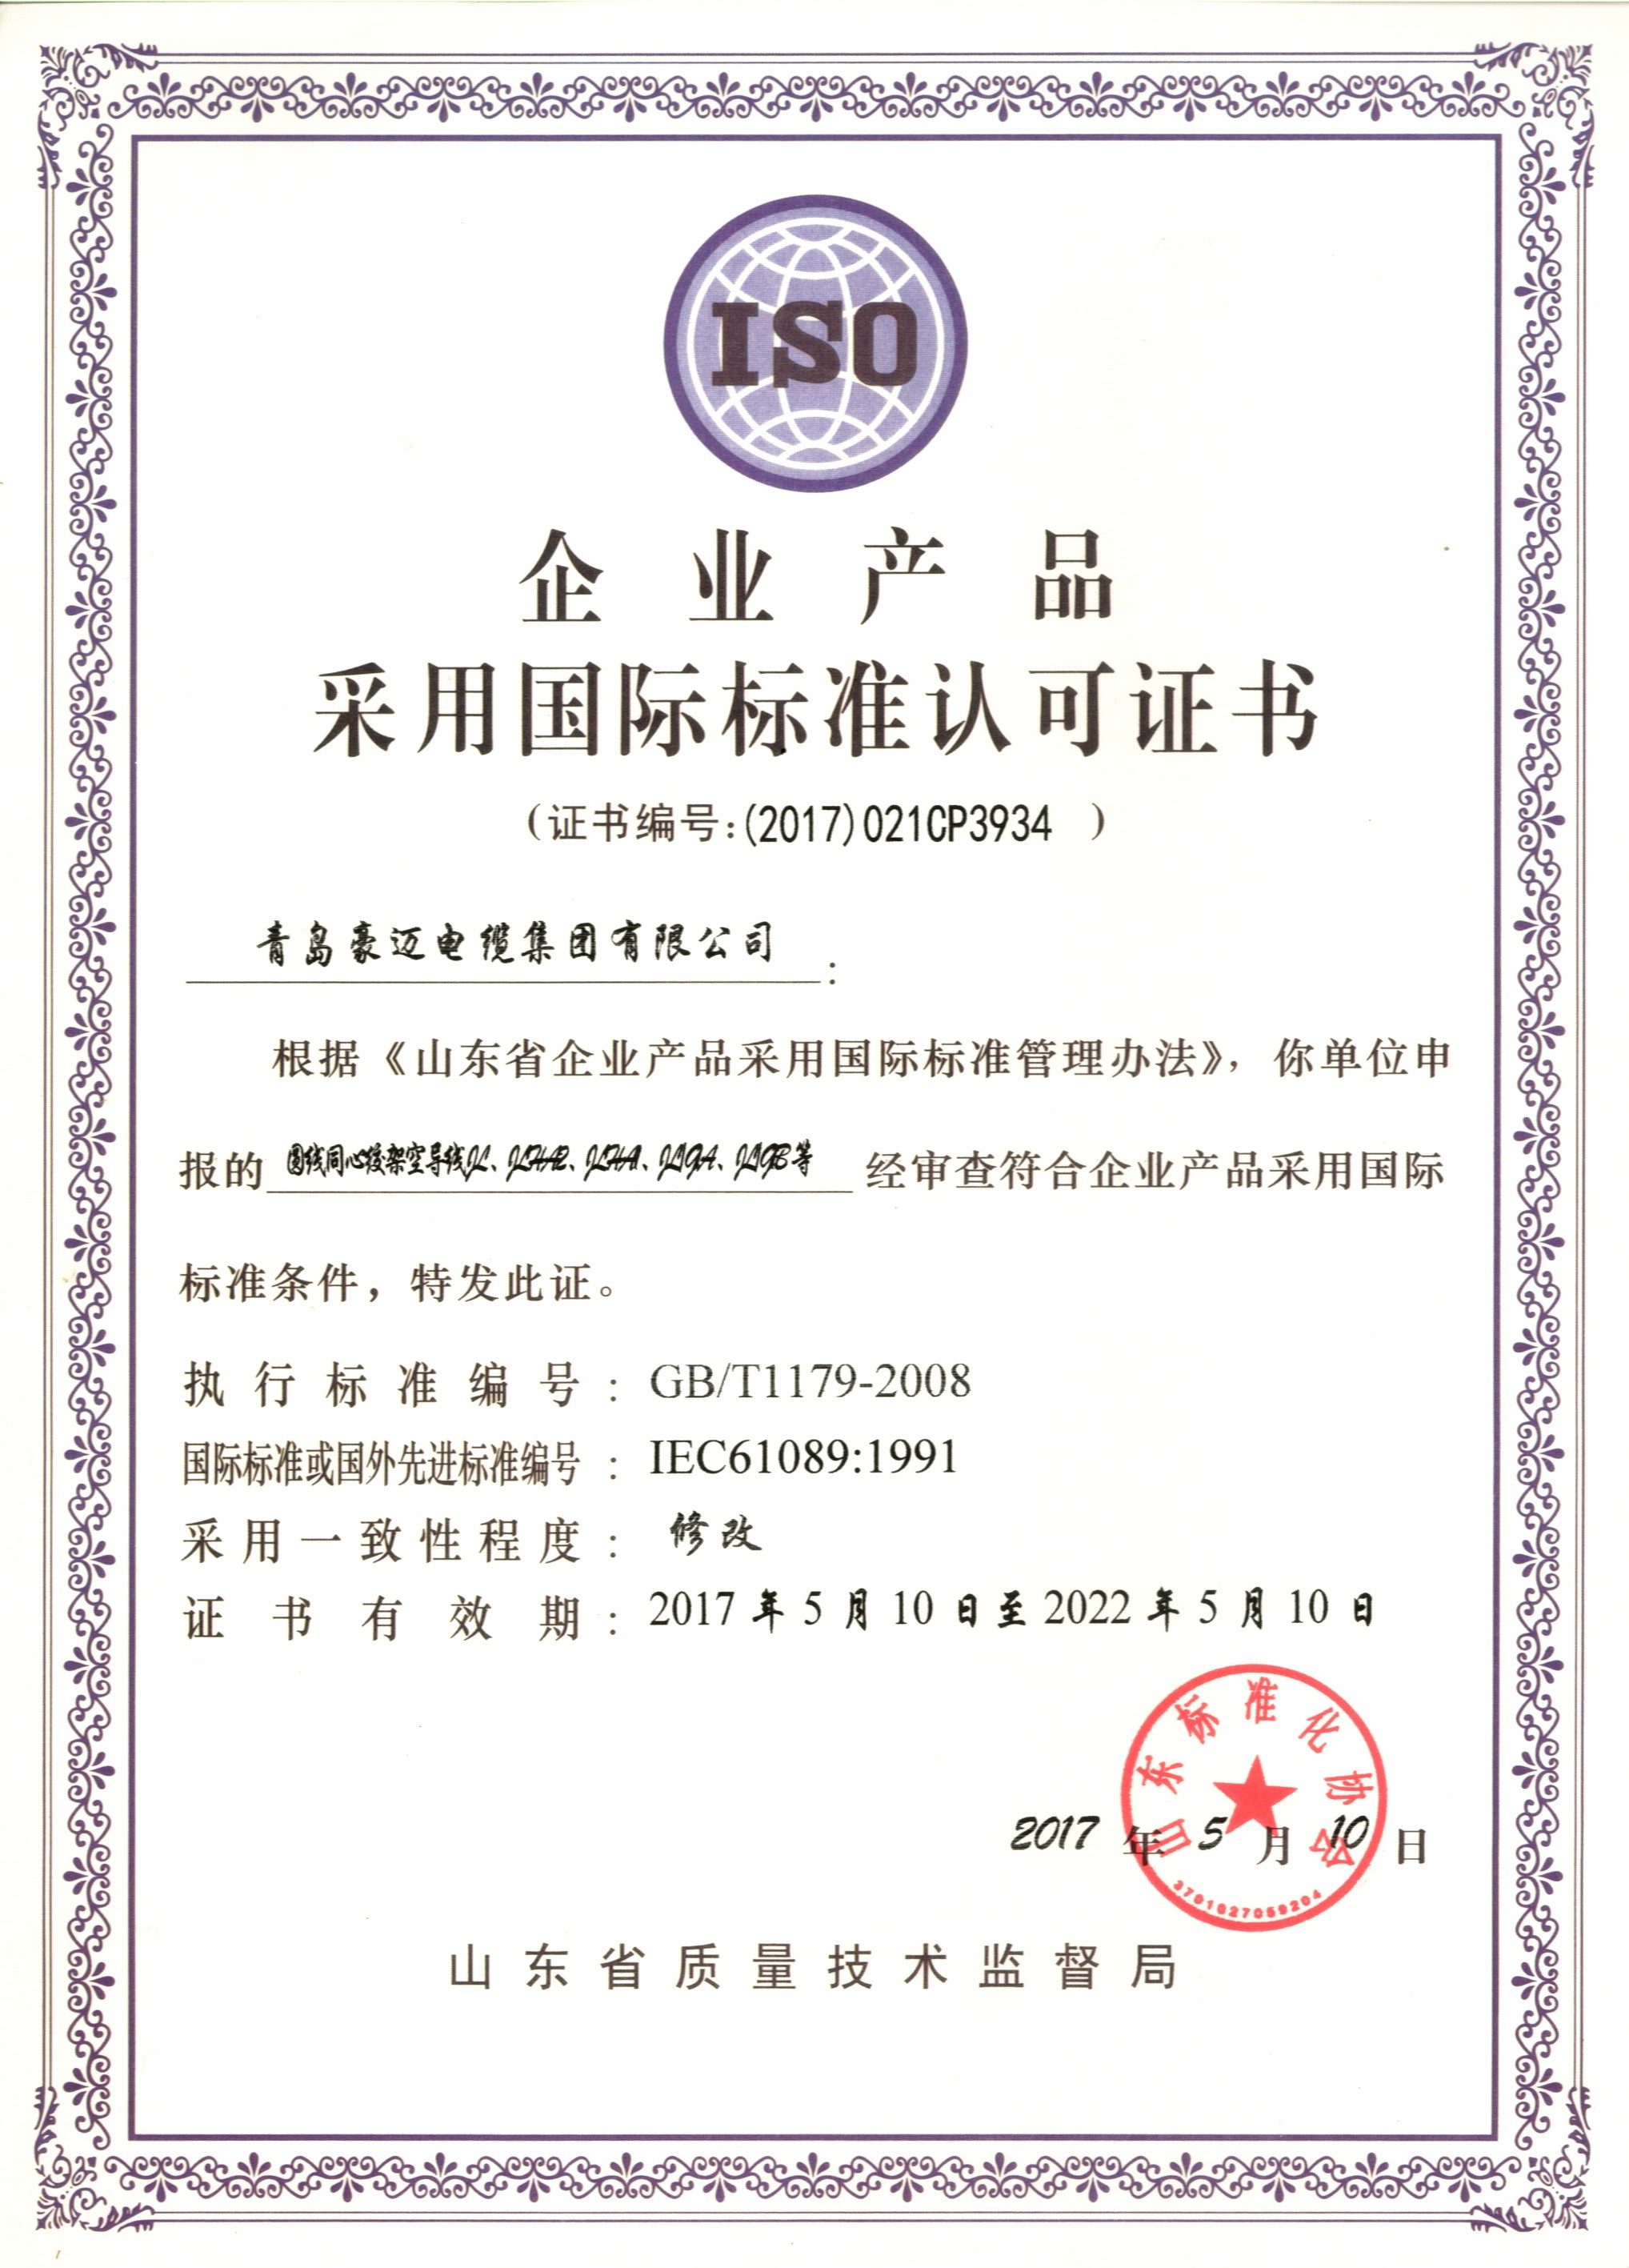 企业产品采用国际标准认可证书6